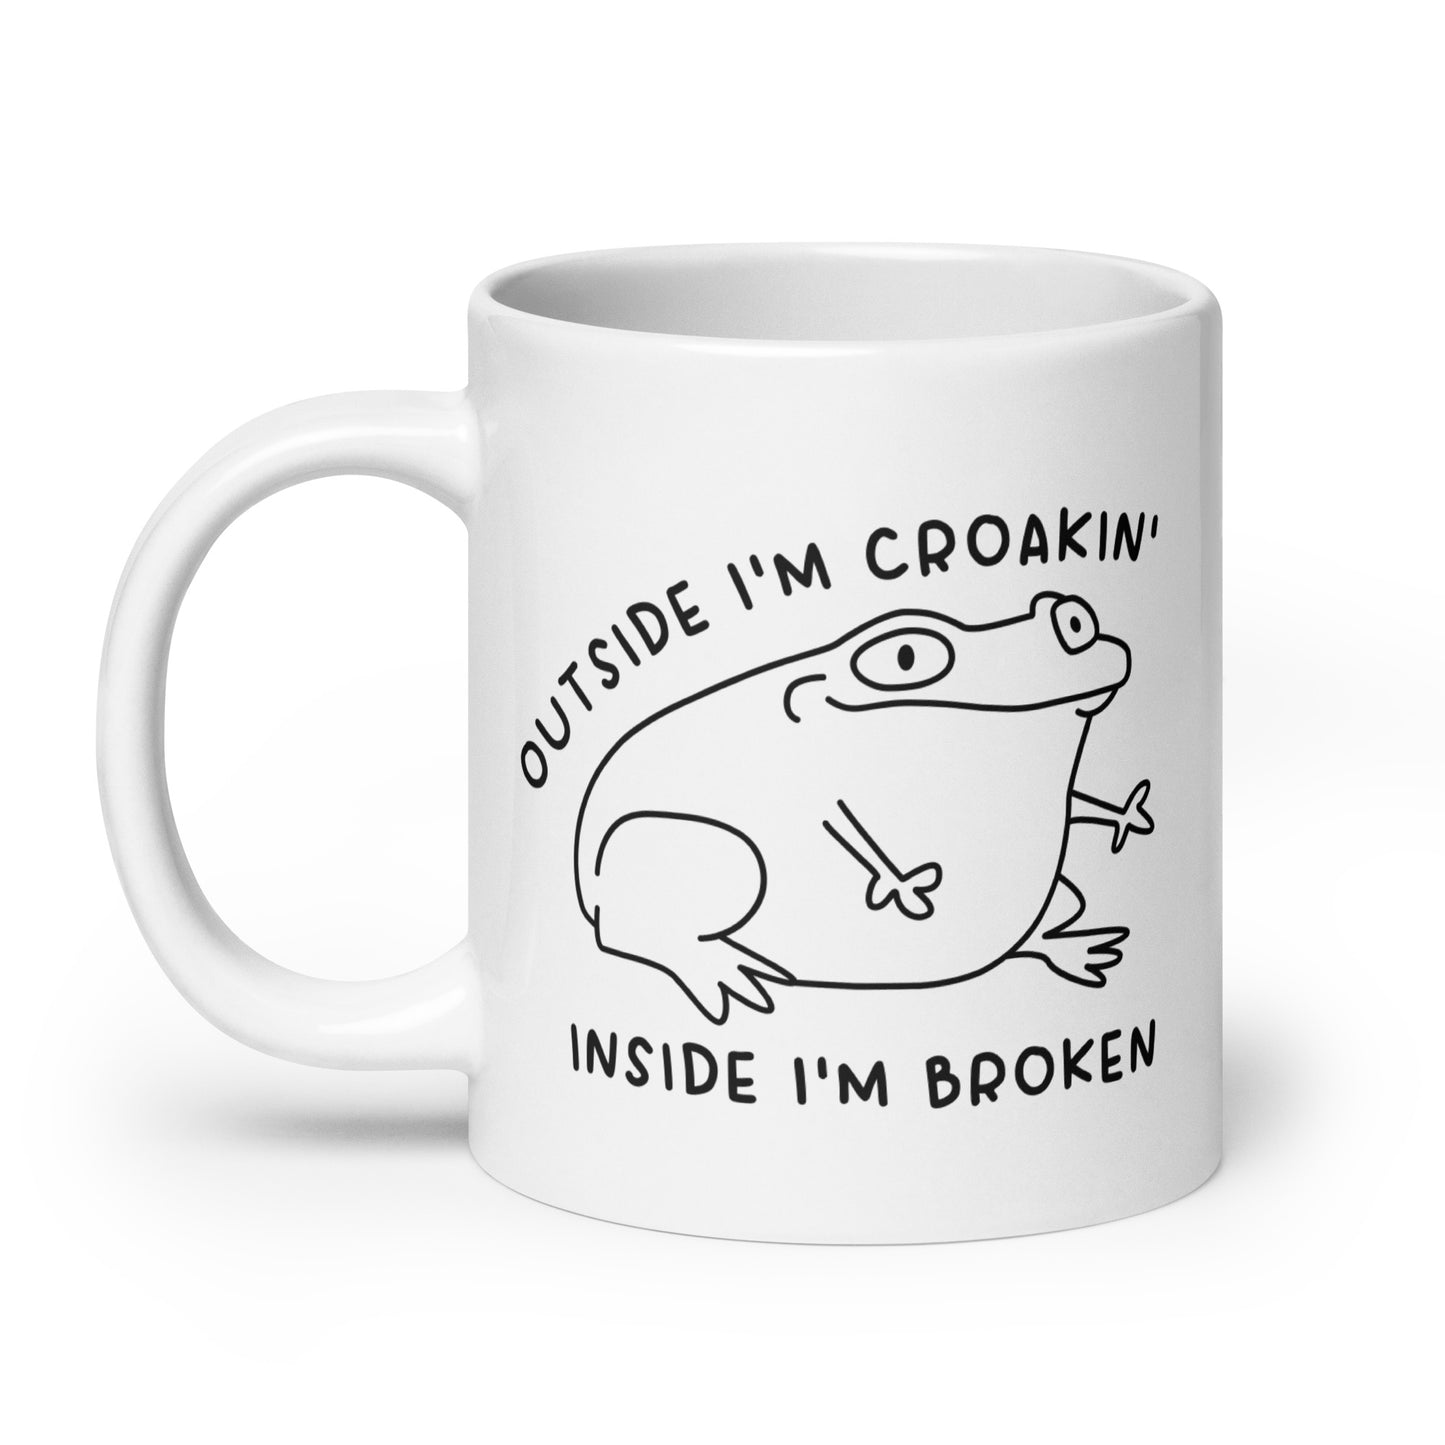 Outside I'm Croakin' mug